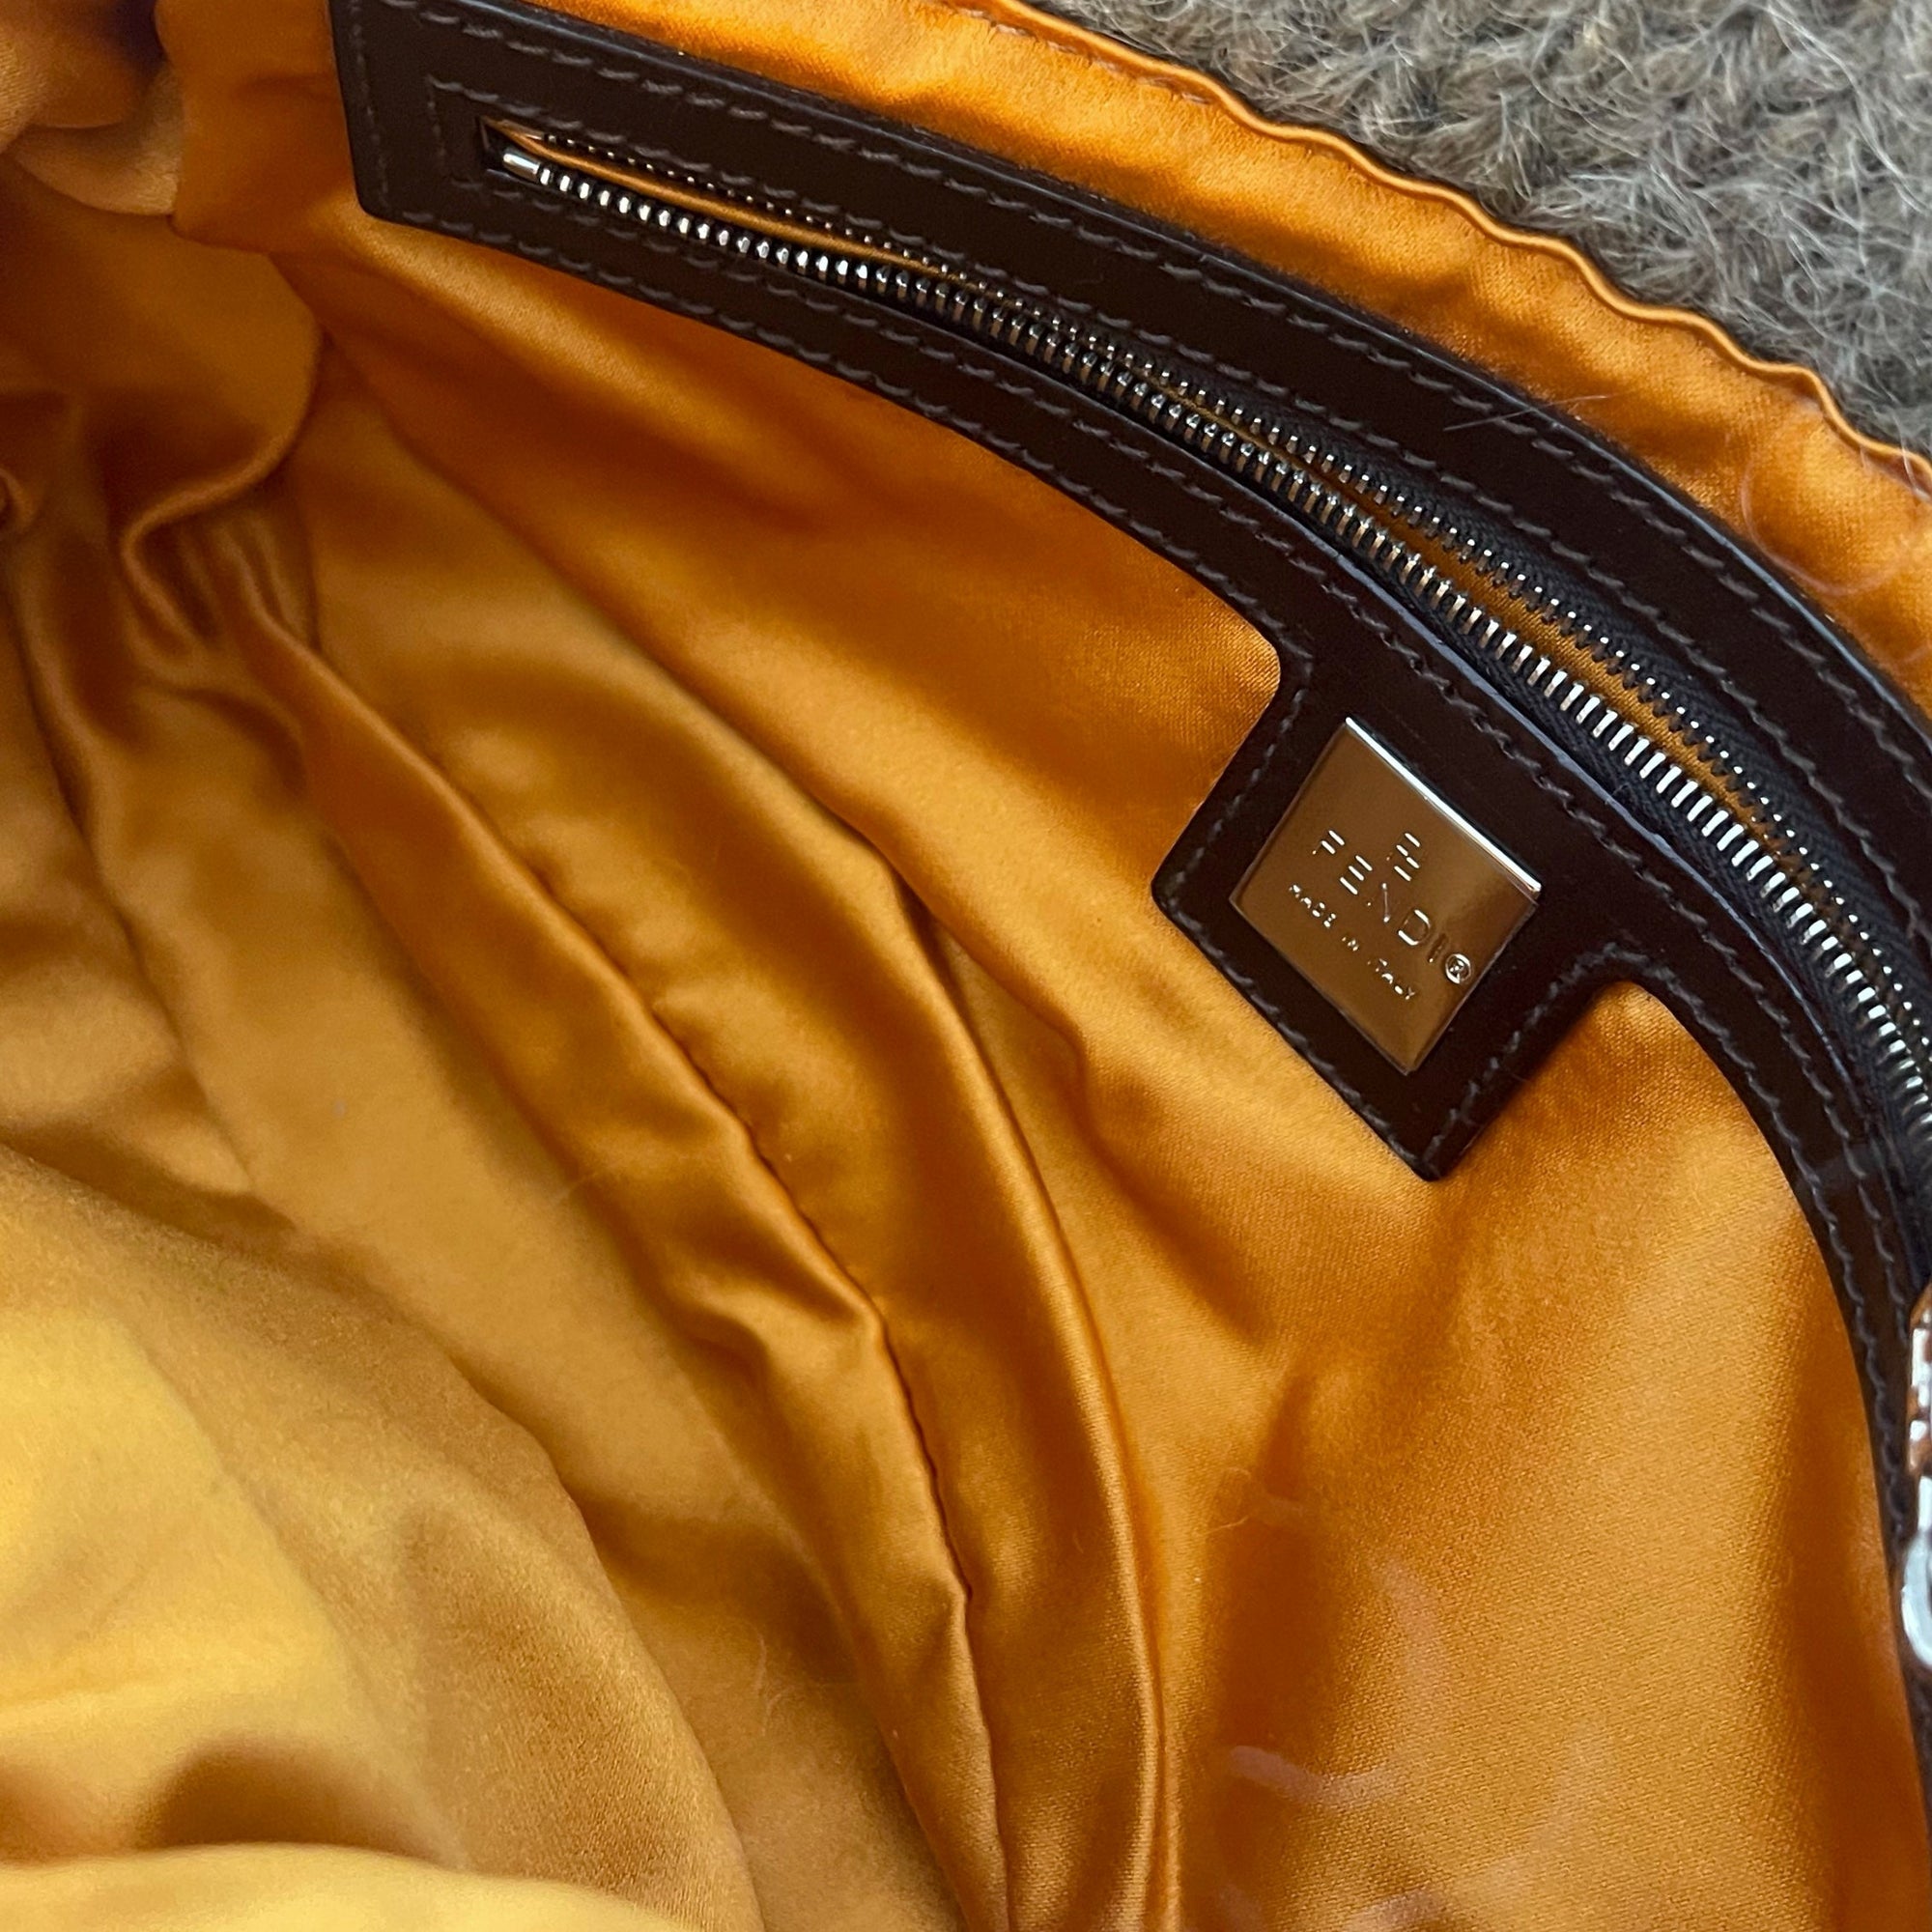 Fendi Grey Floral Wool Baguette - Handbags